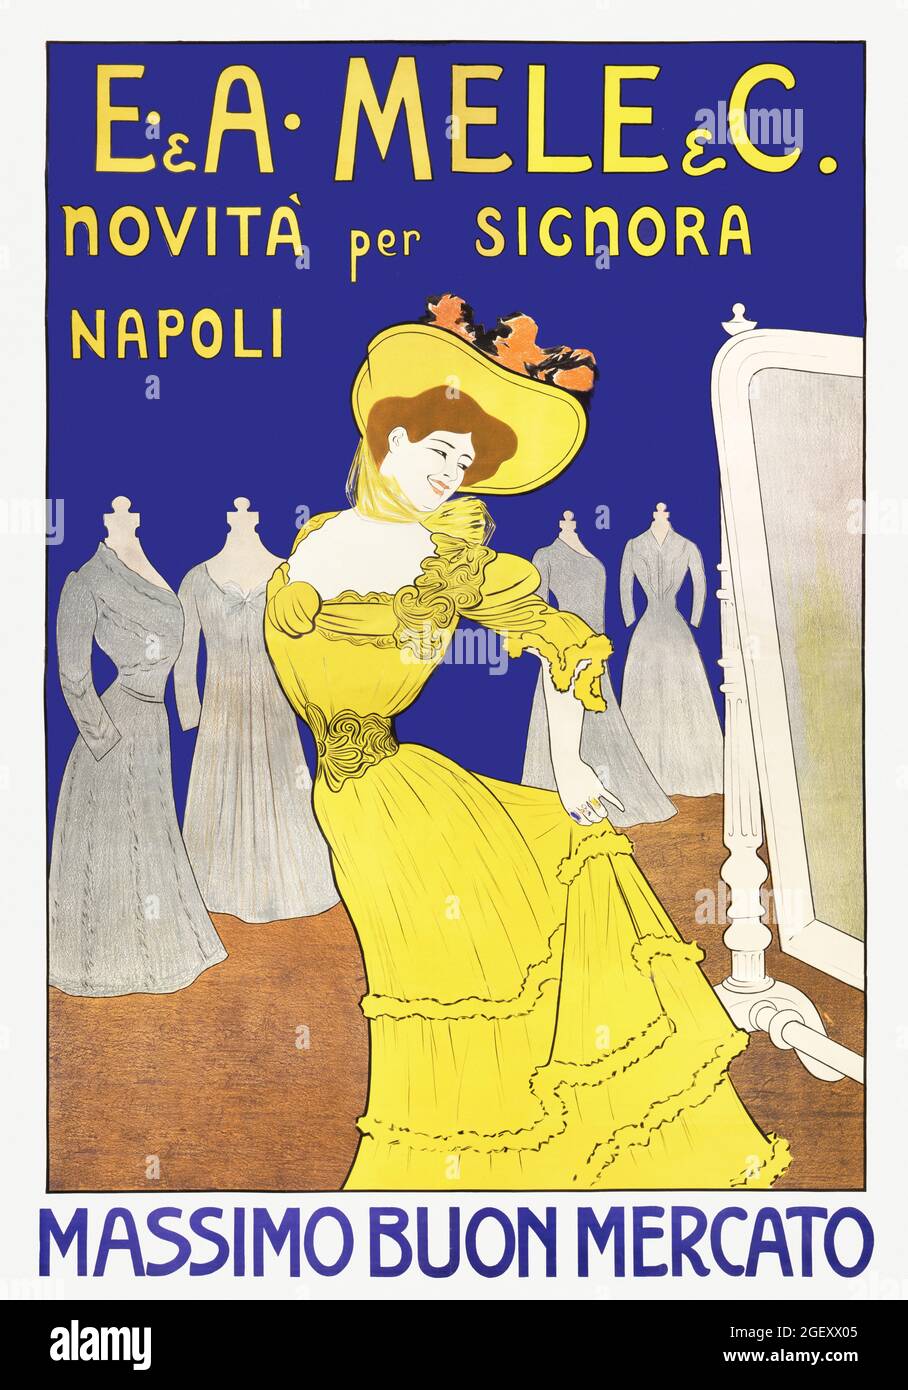 E. & A. Mele & C., novita per signorà Napoli: Massimo buono mercato / L. cappello (1902) stampa in alta risoluzione. Poster Belle époque. Foto Stock